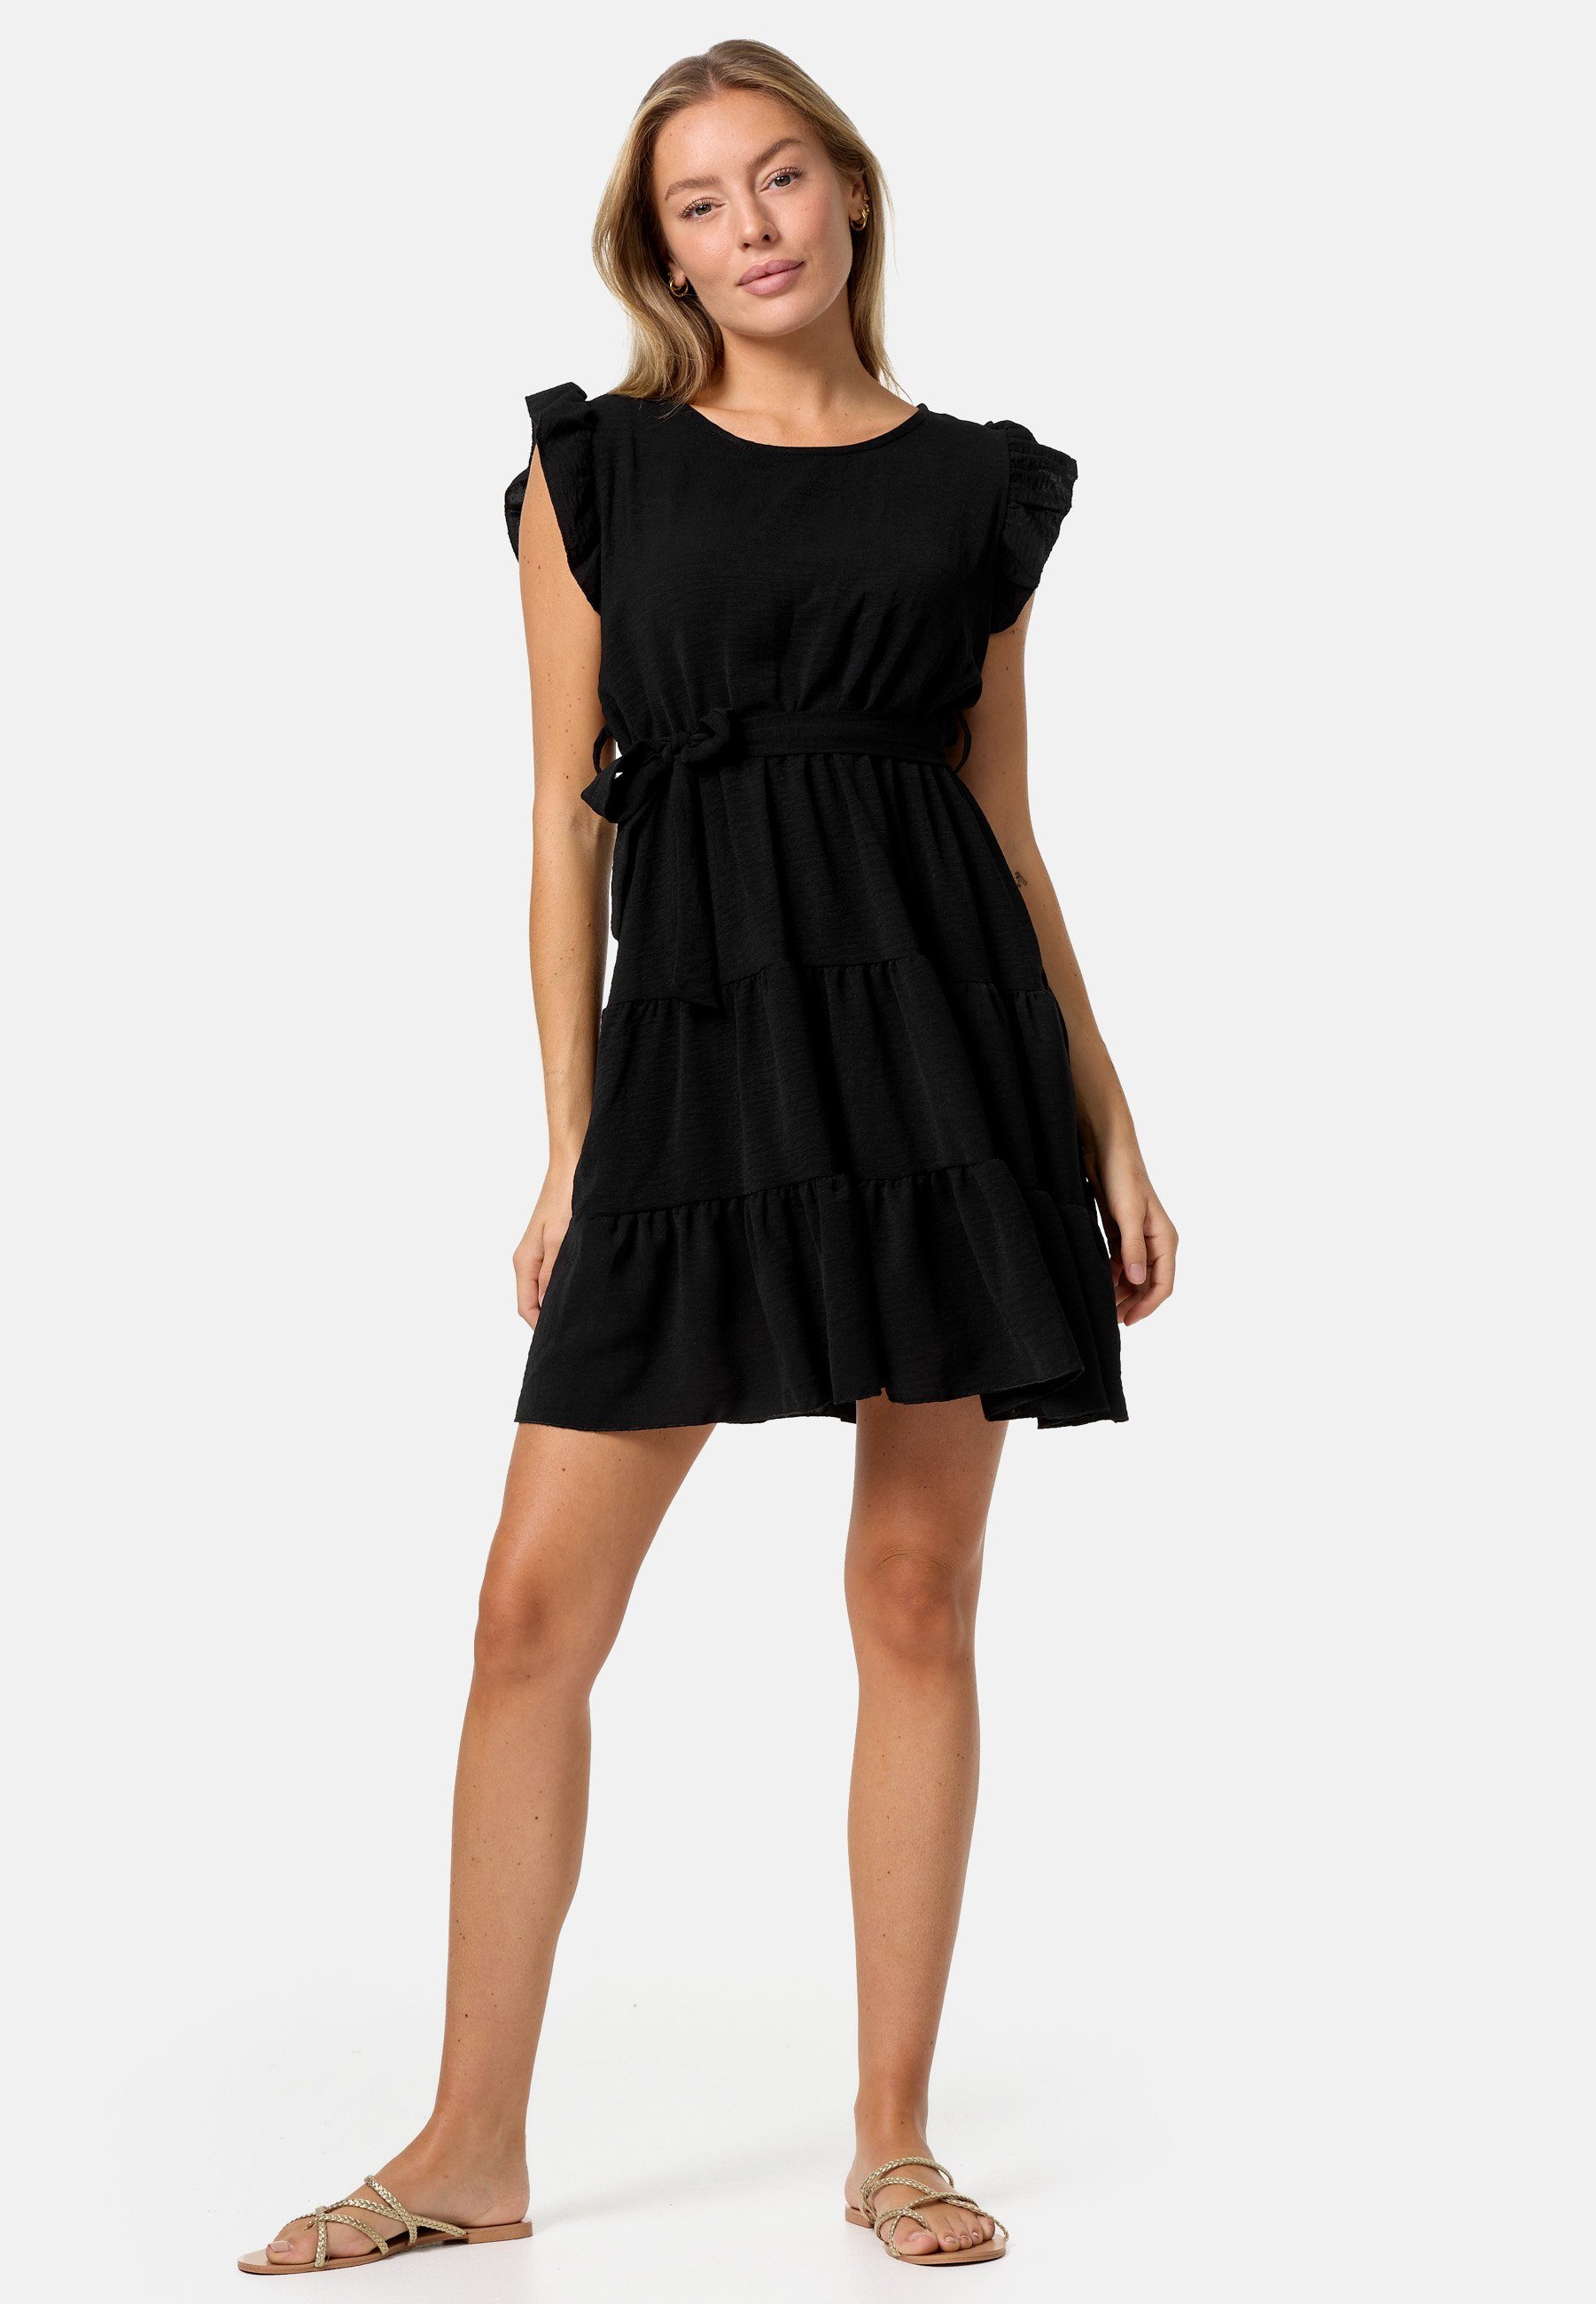 Minikleid mit Schwarz Rüschen PM in PM-27 (Sommerkleid Midi Einheitsgröße) SELECTED Kleid